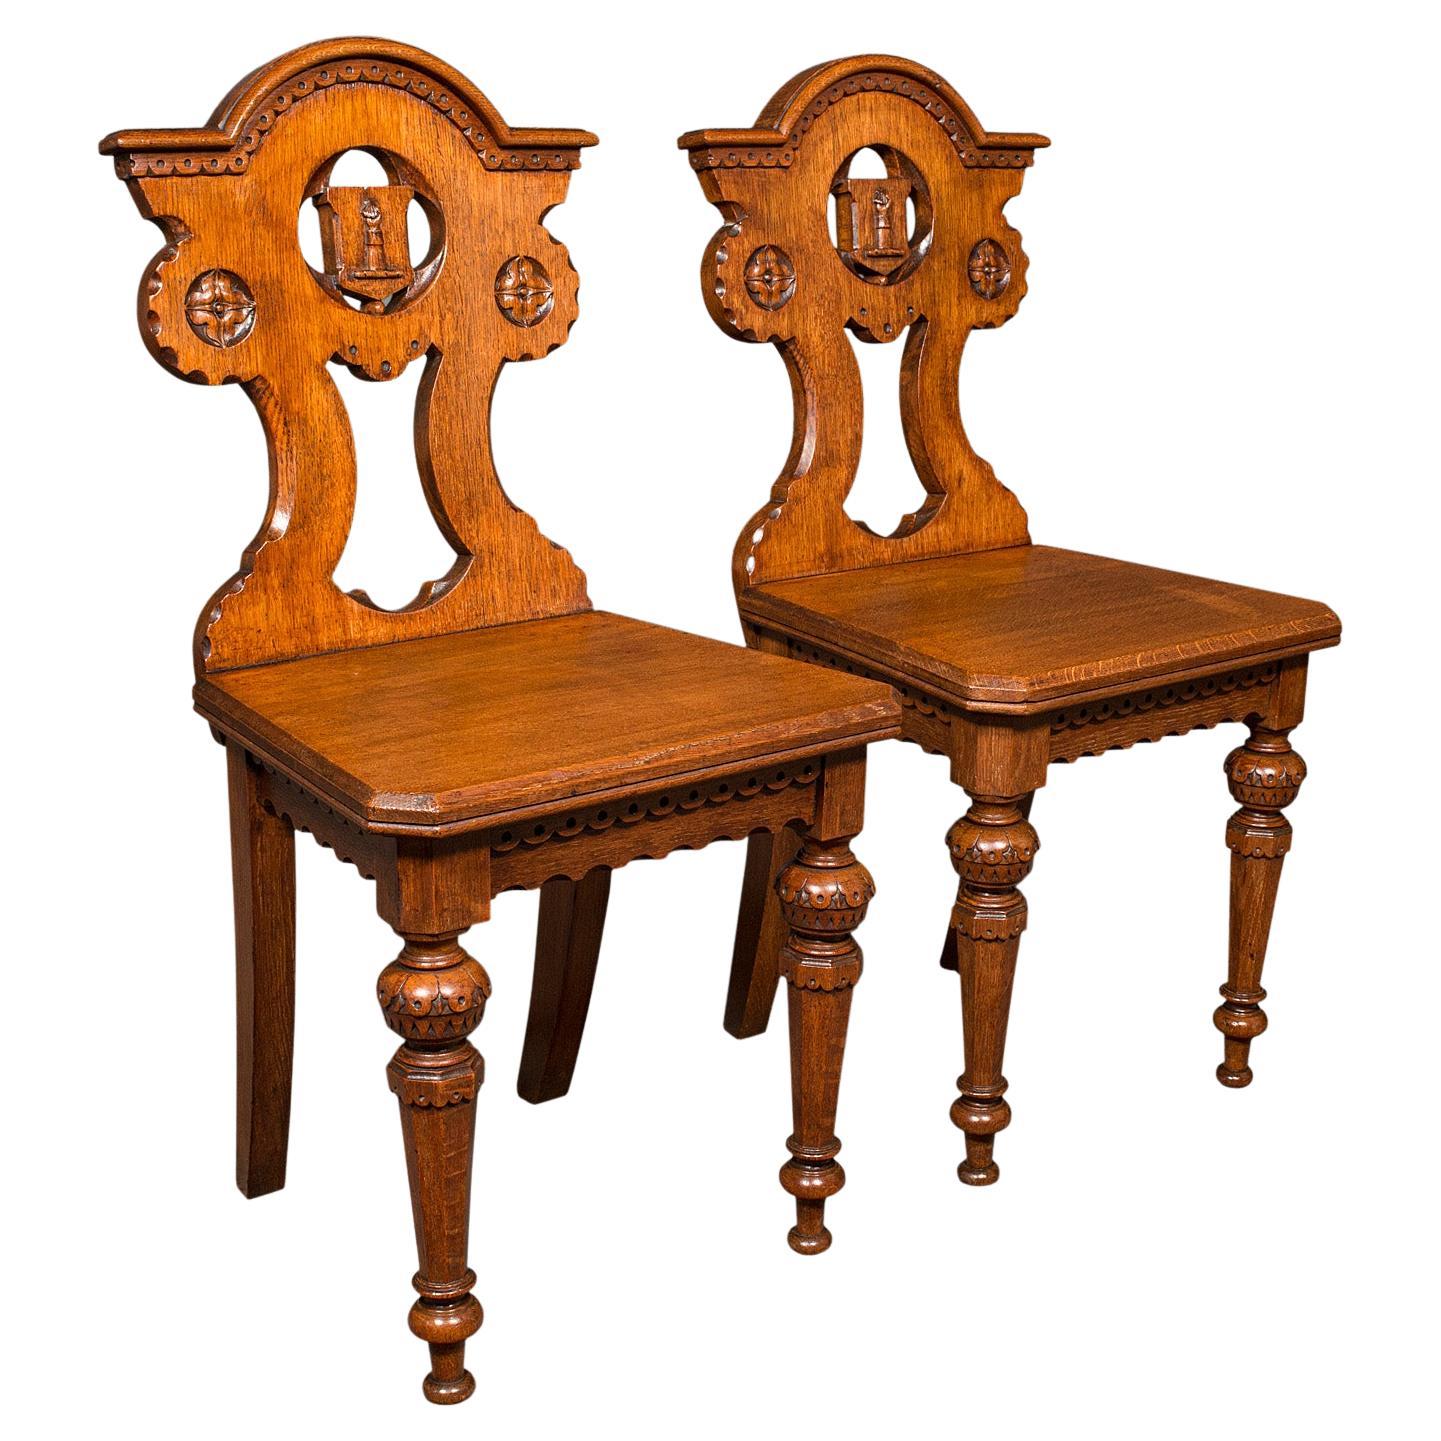 Ein Paar antike Flurstühle, schottisch, Eiche, Sitz, Arts and Crafts-Stil, viktorianisch